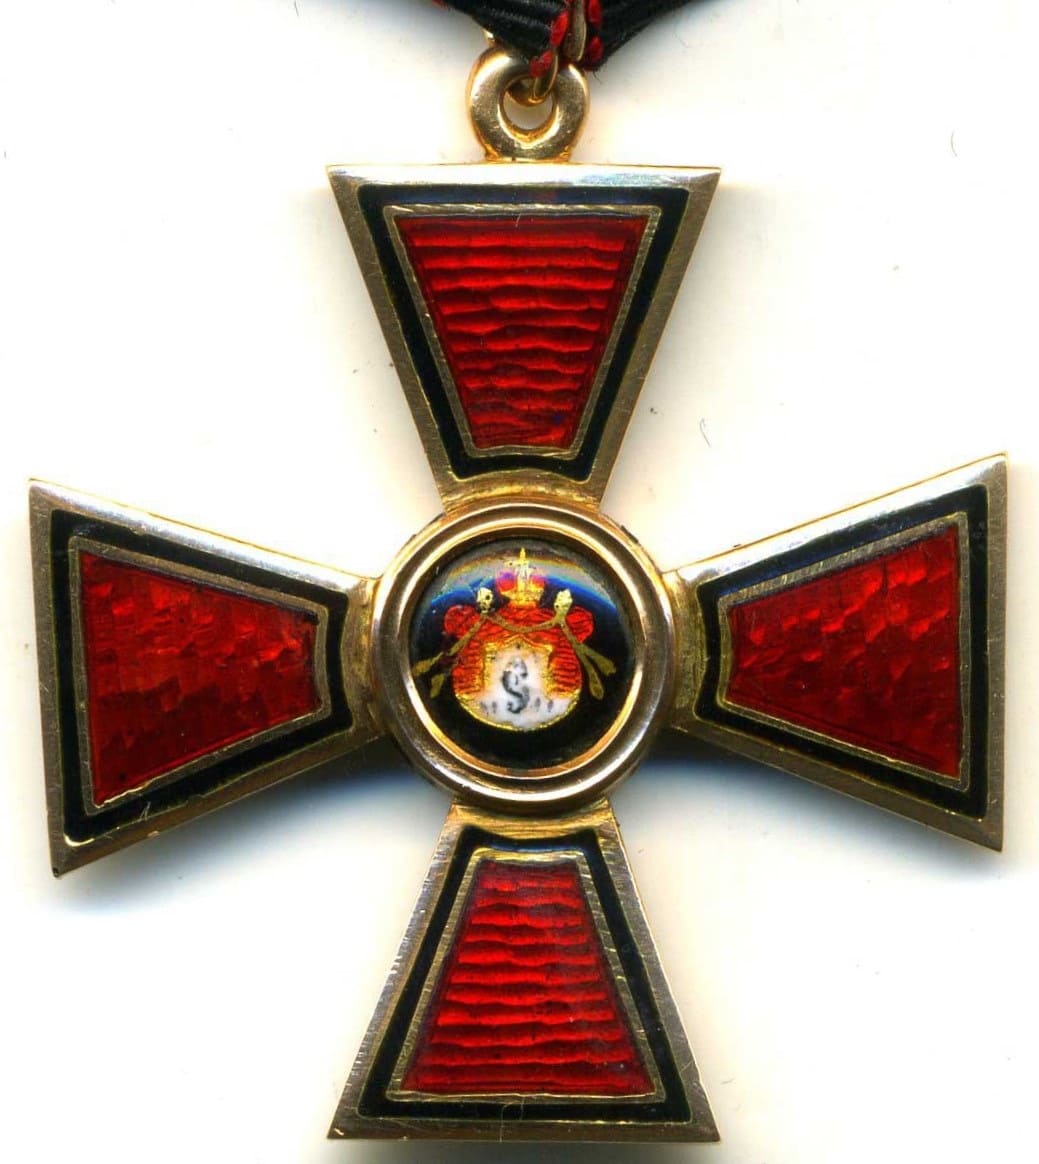 Орден Святого Владимира 4-й степени мастерской Юлиуса Кейбеля.jpg